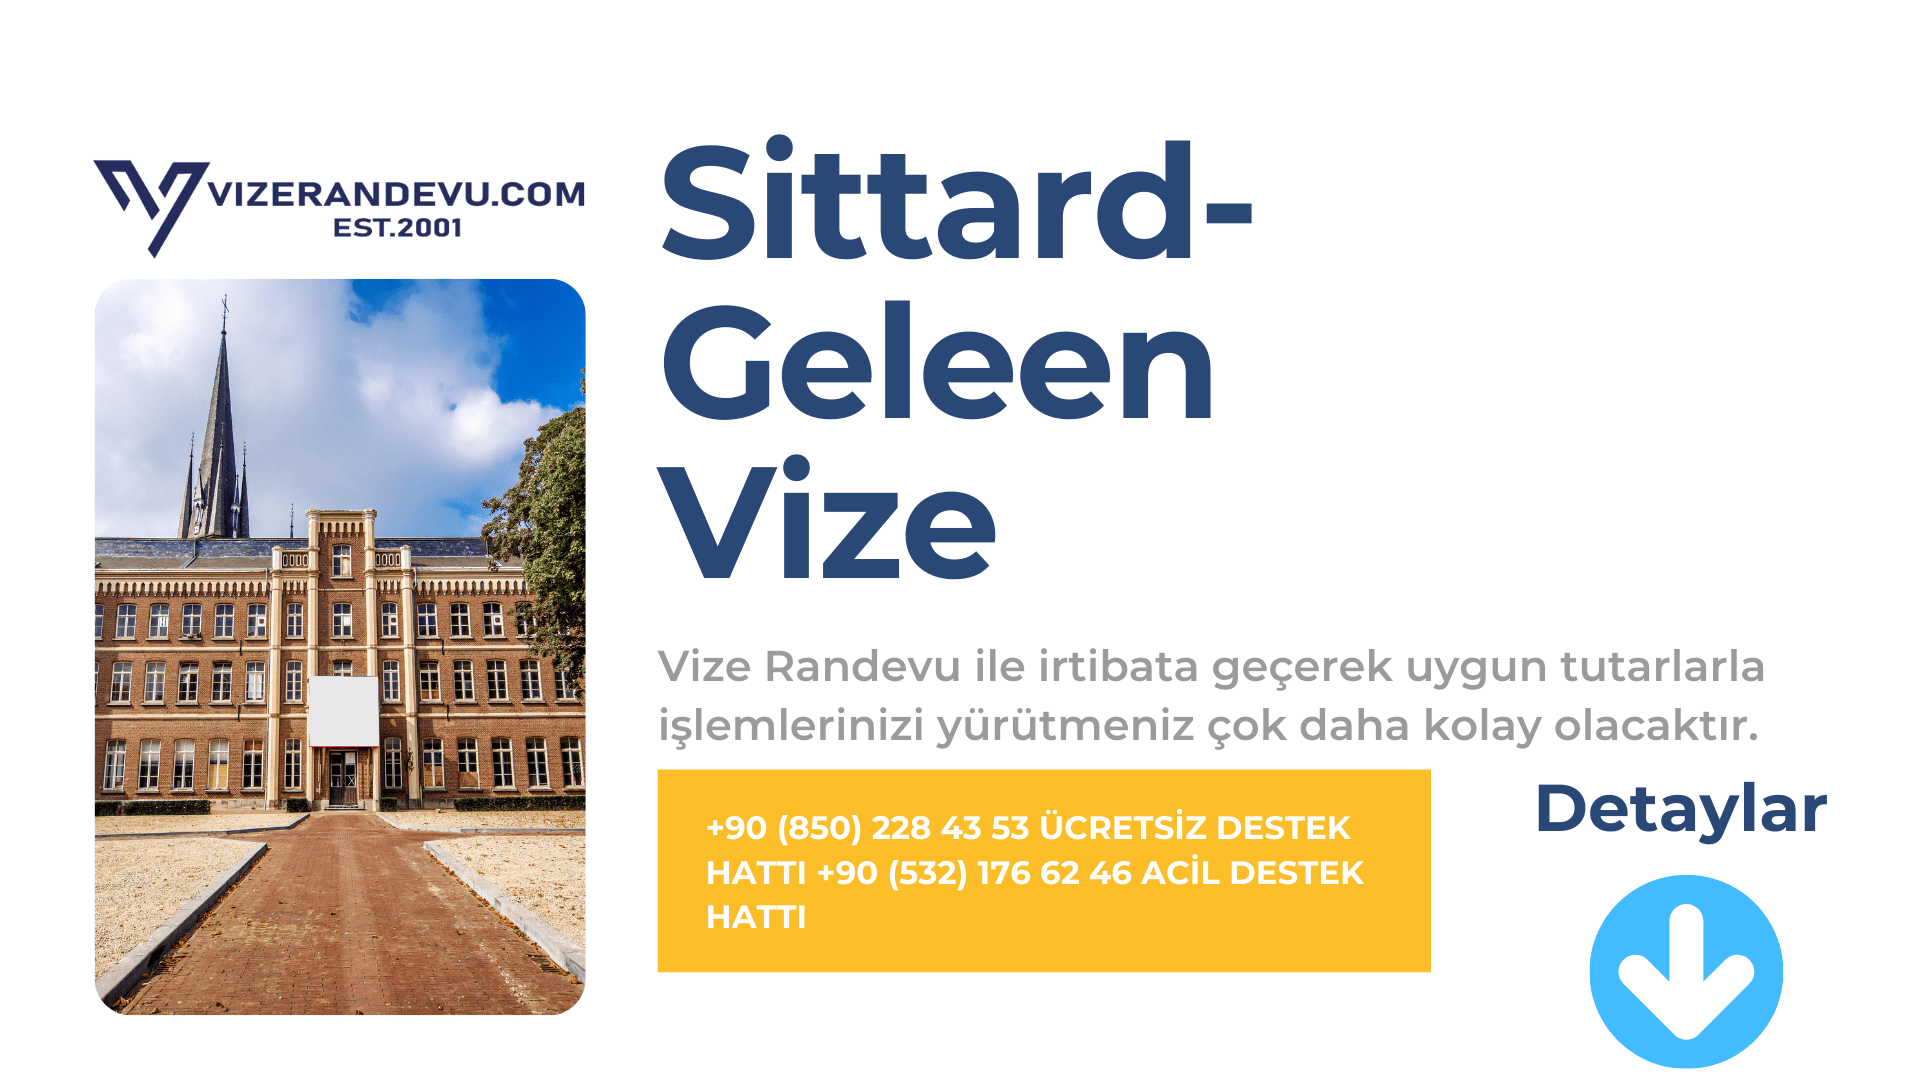 Hollanda Sittard- Gelenn Vize Başvurusu